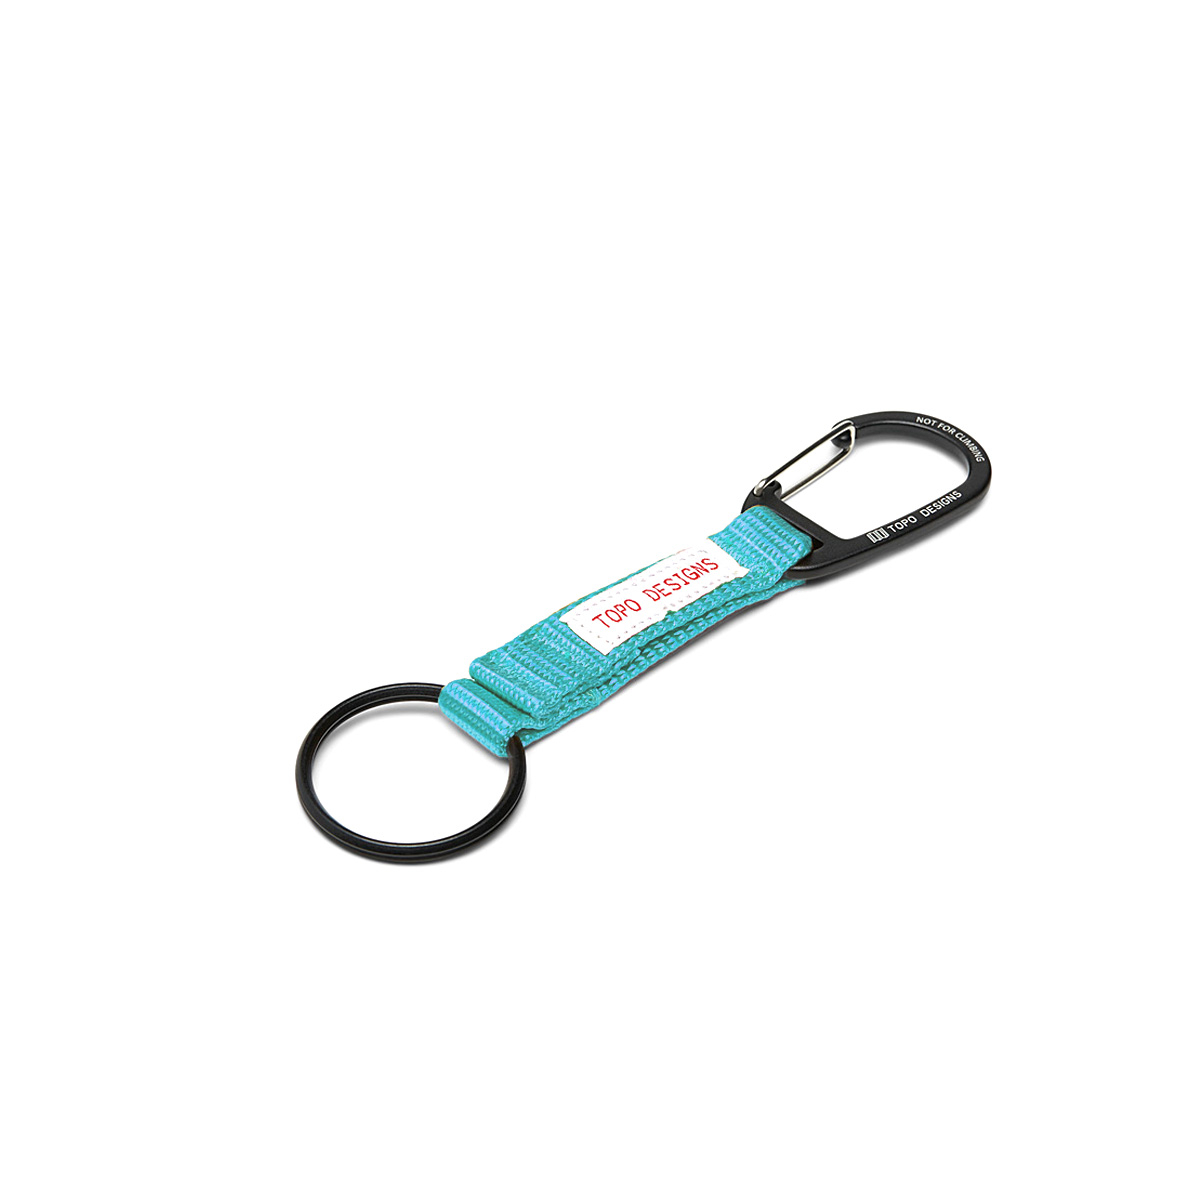 Topo Designs Key Clip Turquoise, houd sleutels bij de hand en zichtbaar met de Key Clip